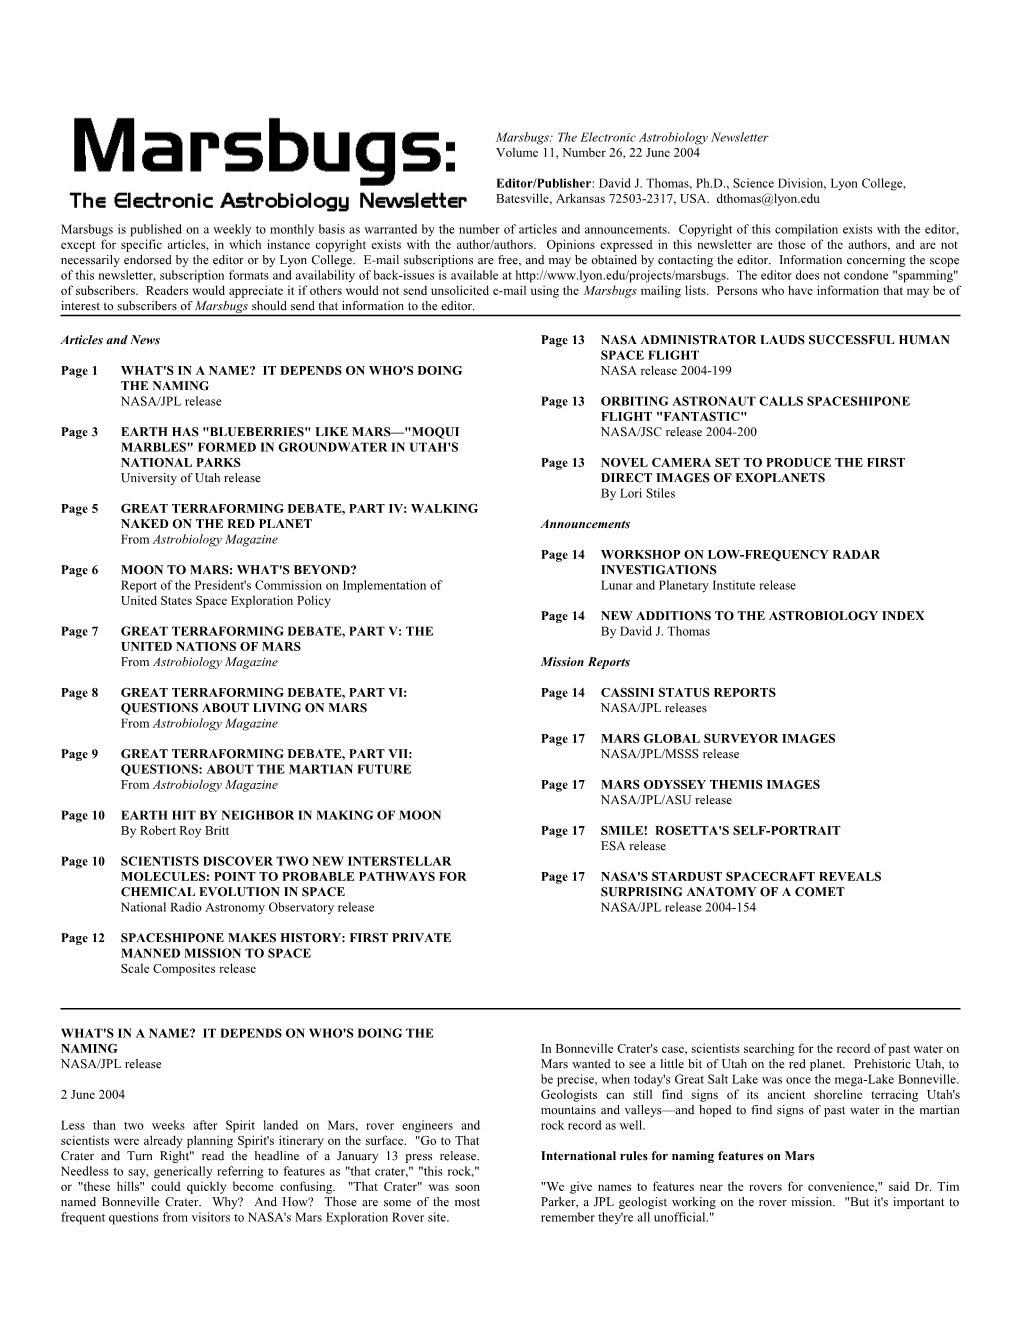 Marsbugs Vol. 11, No. 26